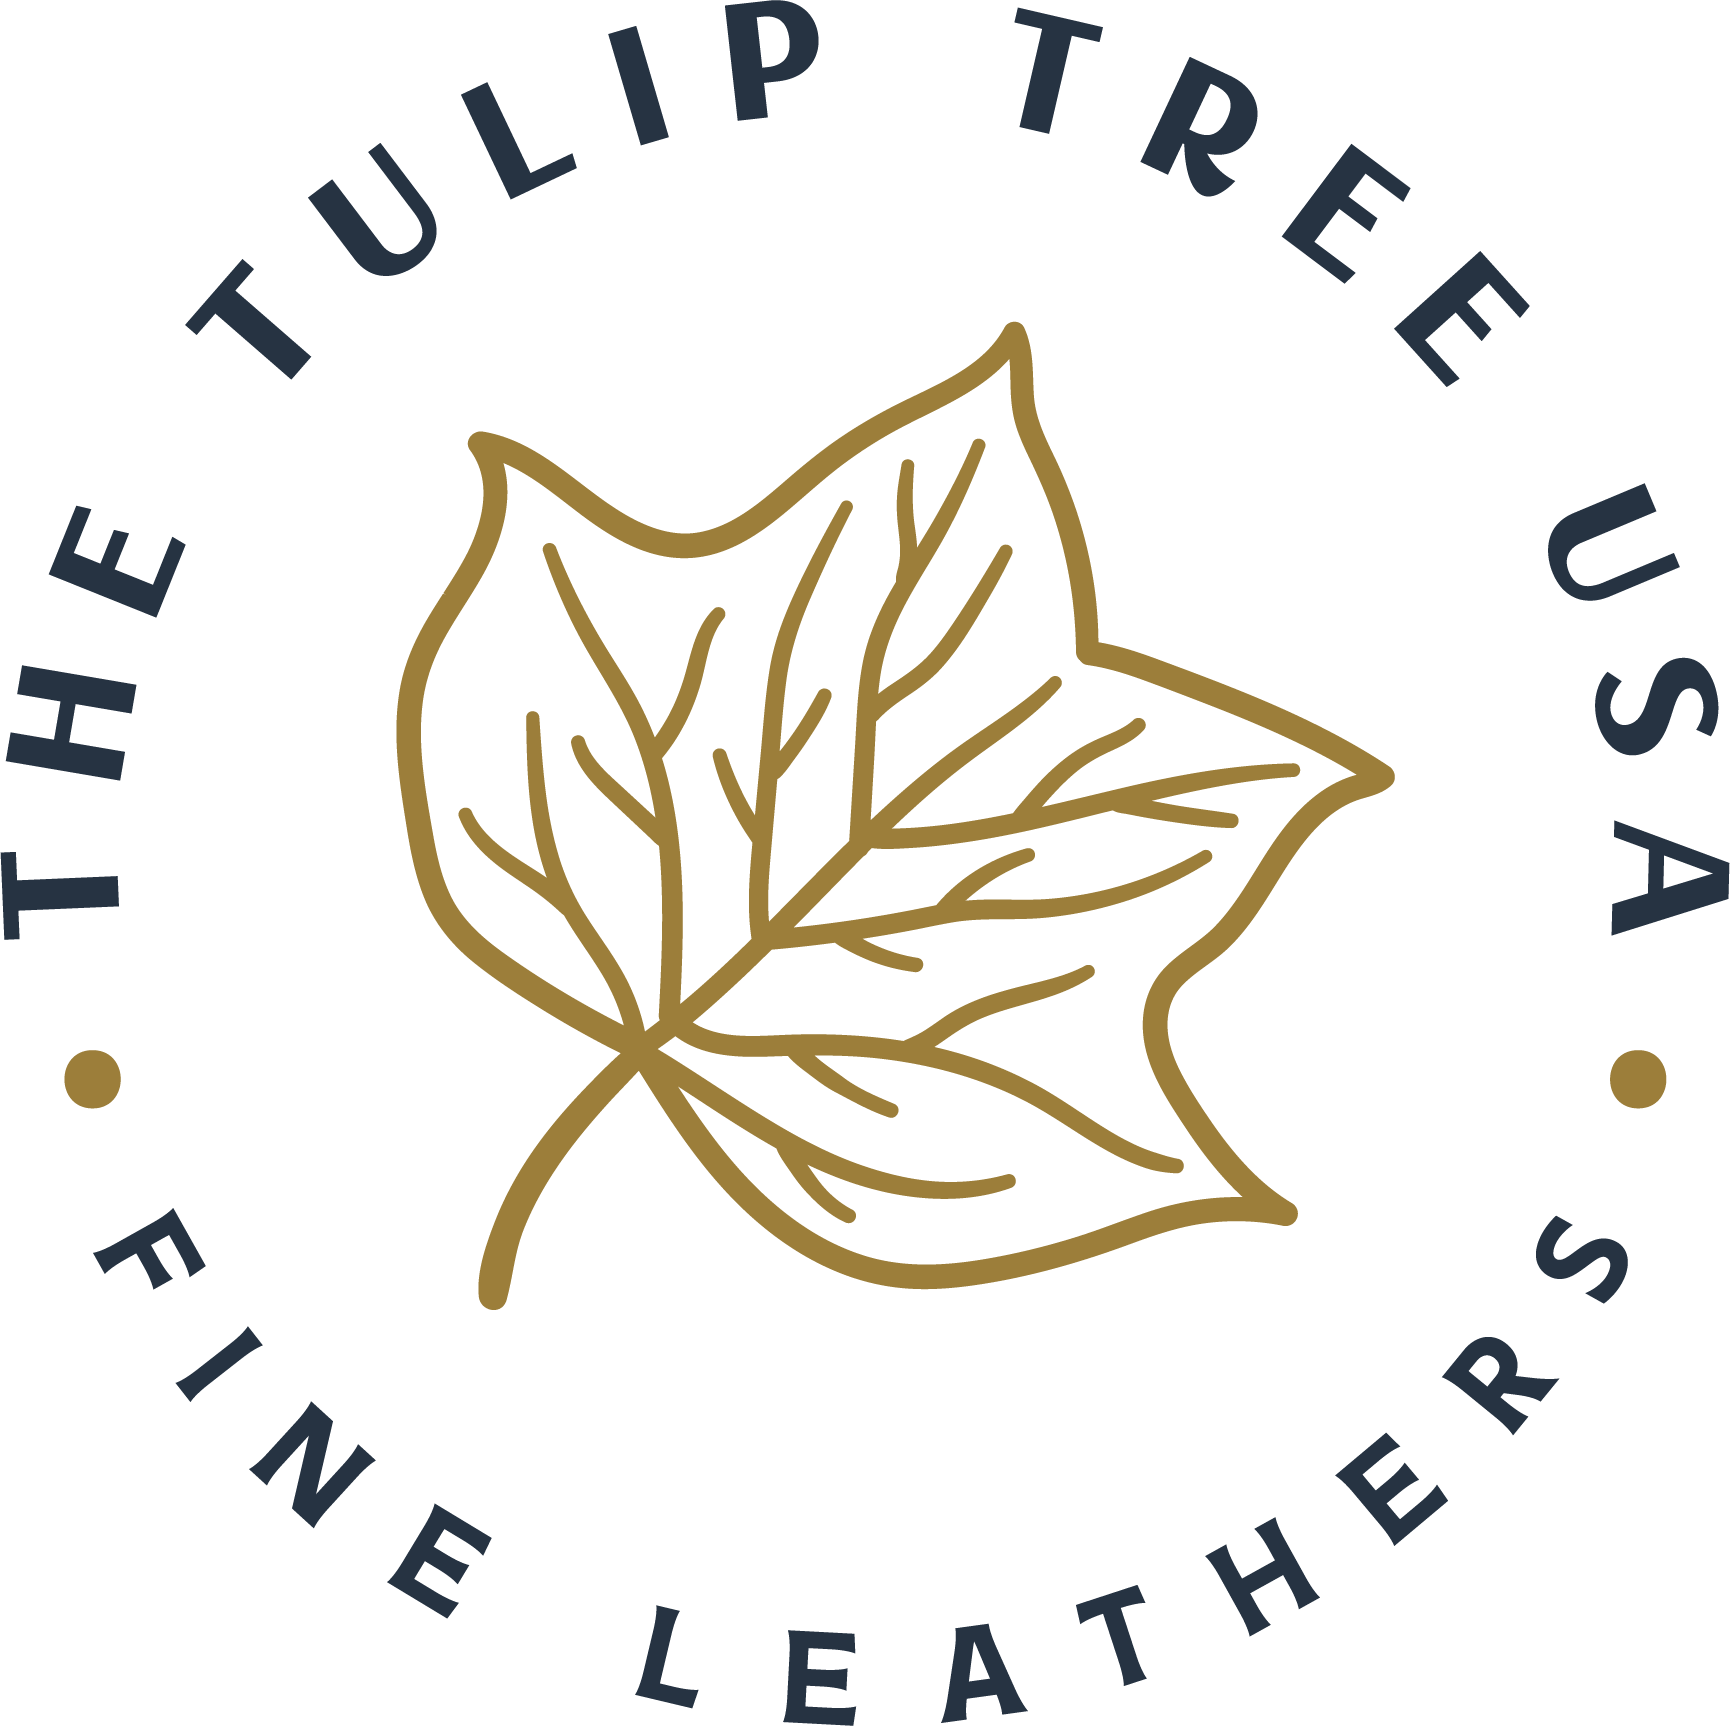 The Tulip Tree USA